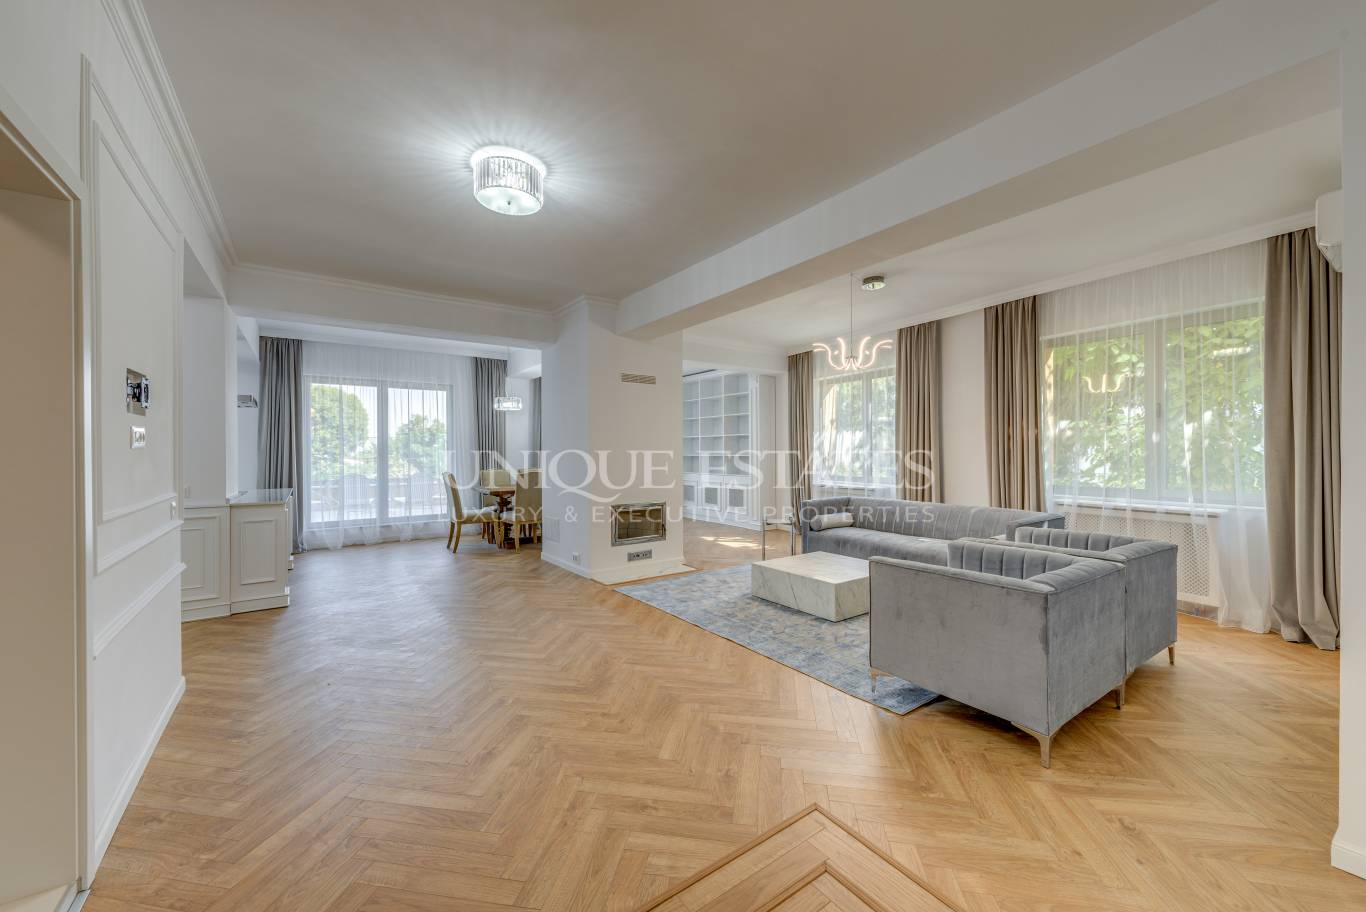 Апартамент под наем в София, Бояна - код на имота: N18890 - image 2